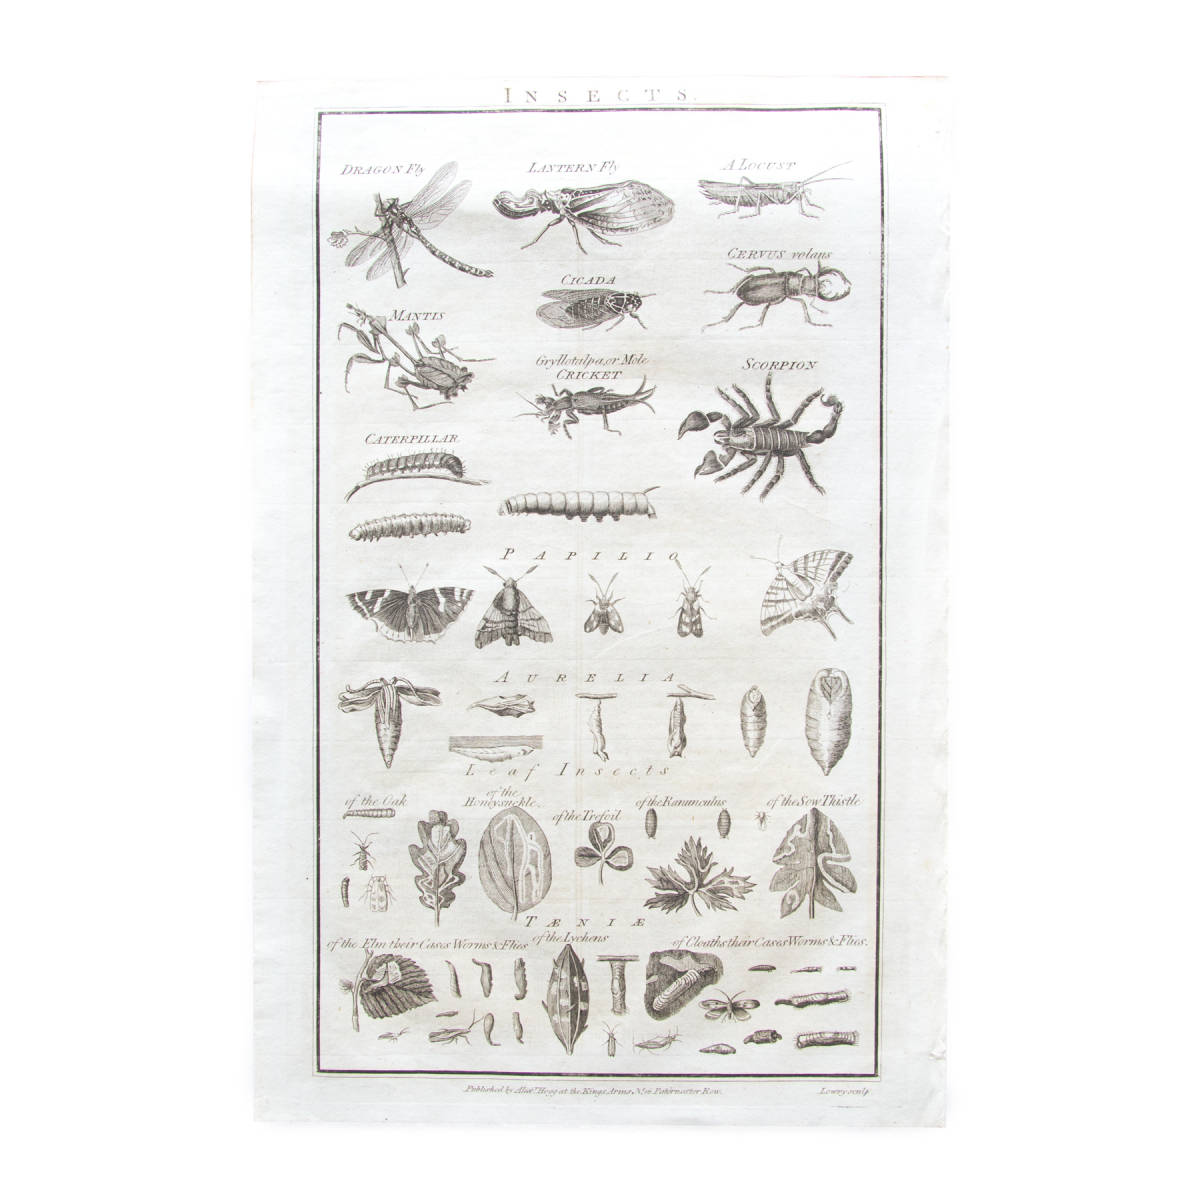 عينة الحشرات العتيقة كتاب صور فن الرسم طباعة المملكة المتحدة المملكة المتحدة ب, العتيقة, مجموعة, المطبوعات, آحرون